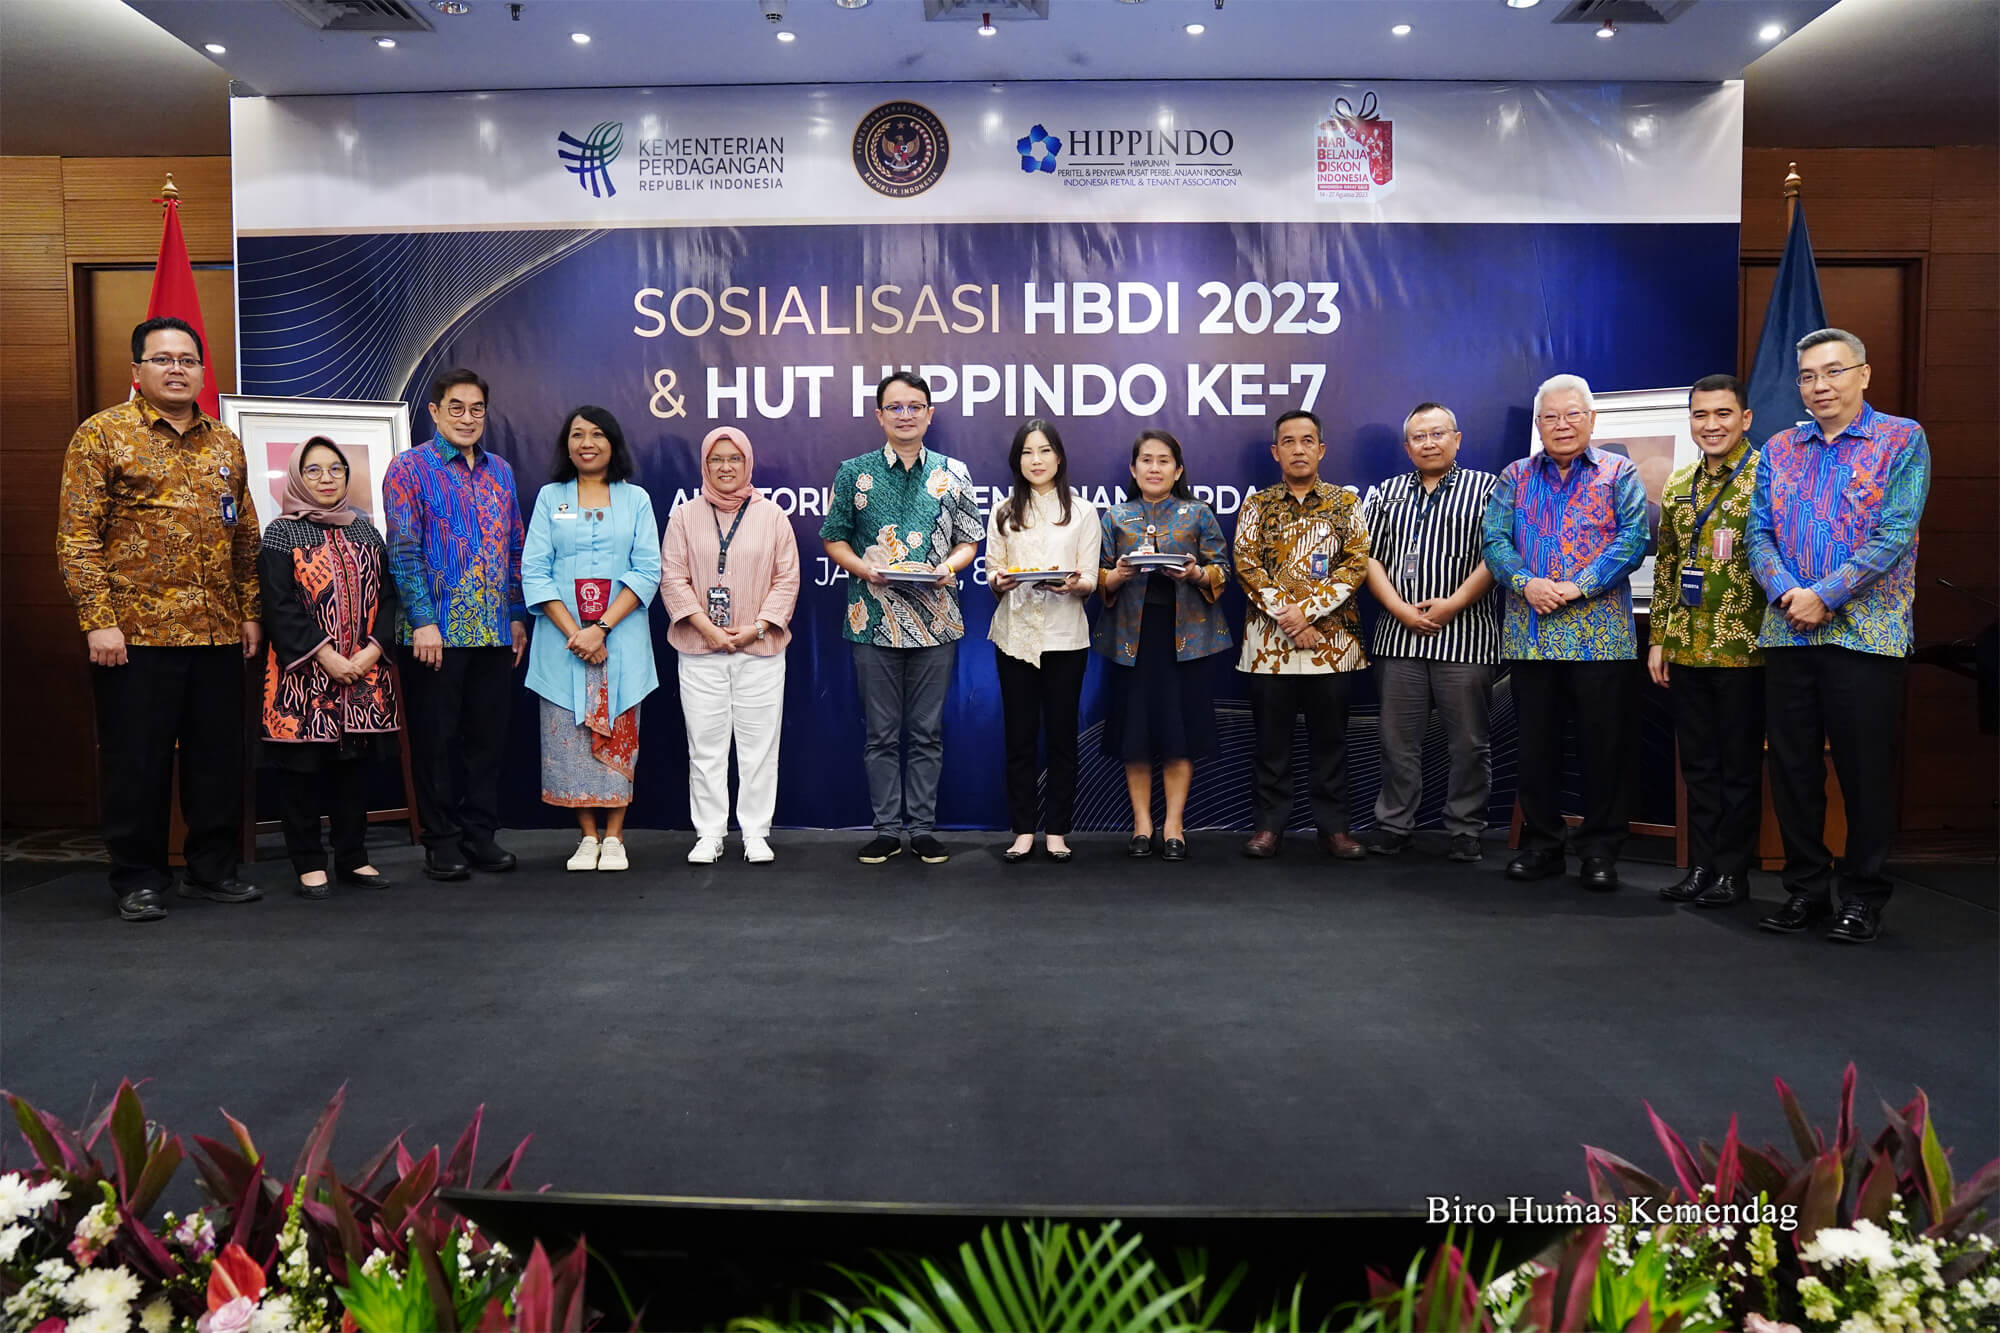 Acara tersebut dihadiri oleh Wakil Menteri Pariwisata dan Ekonomi Kreatif, Angela Tanoesoedibjo serta Ketua Umum Himpunan Peritel dan Penyewa Pusat Perbelanjaan Indonesia (HIPPINDO), Budihardjo Iduansjah.